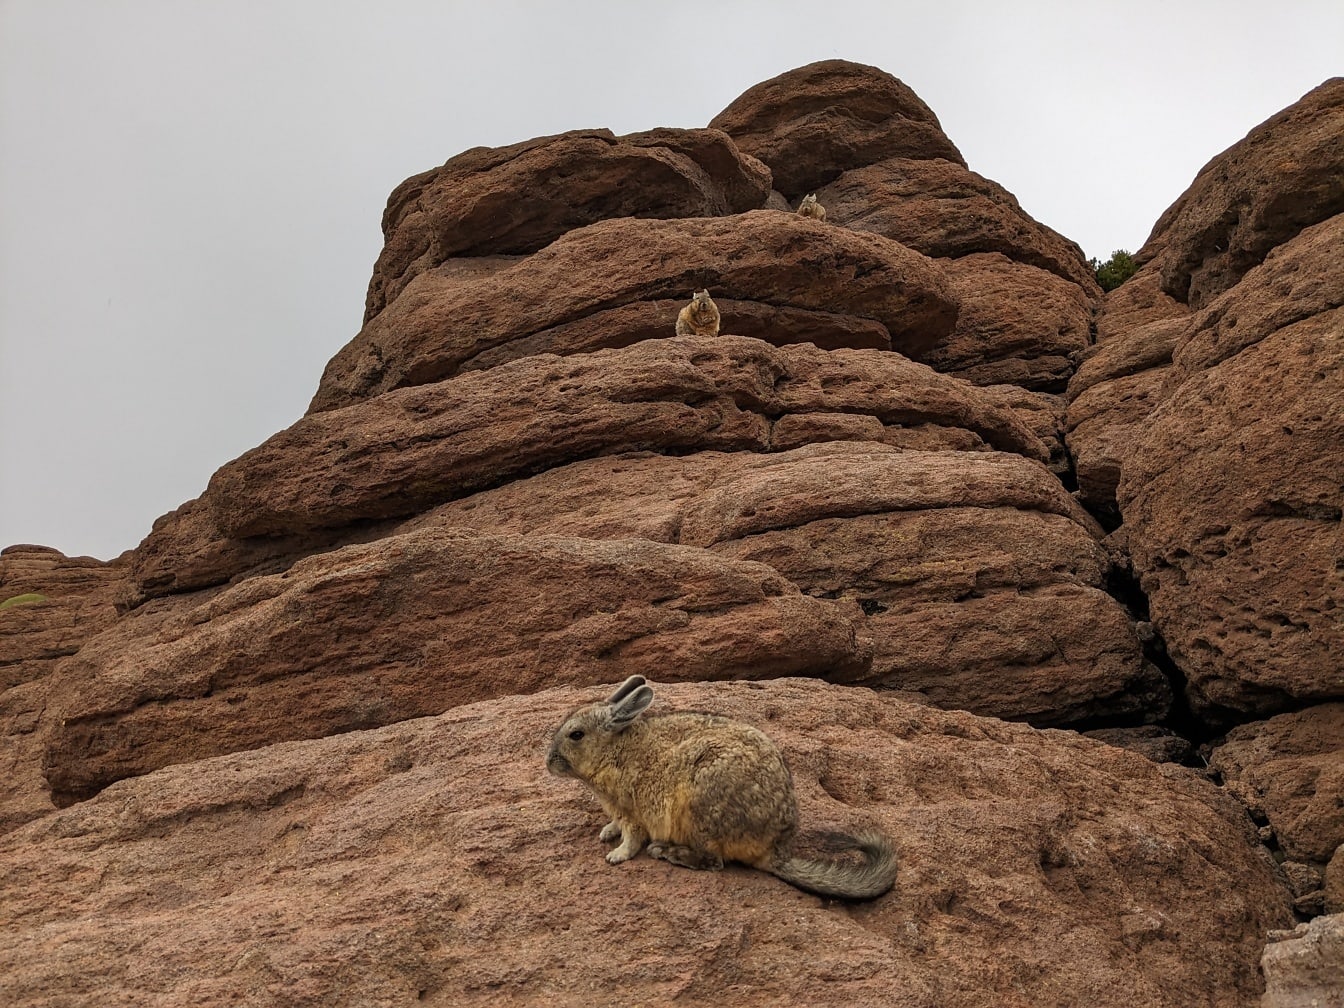 De zuidelijke viscacha (Lagidium viscacia) dier op een rots in de Peruaanse woestijn